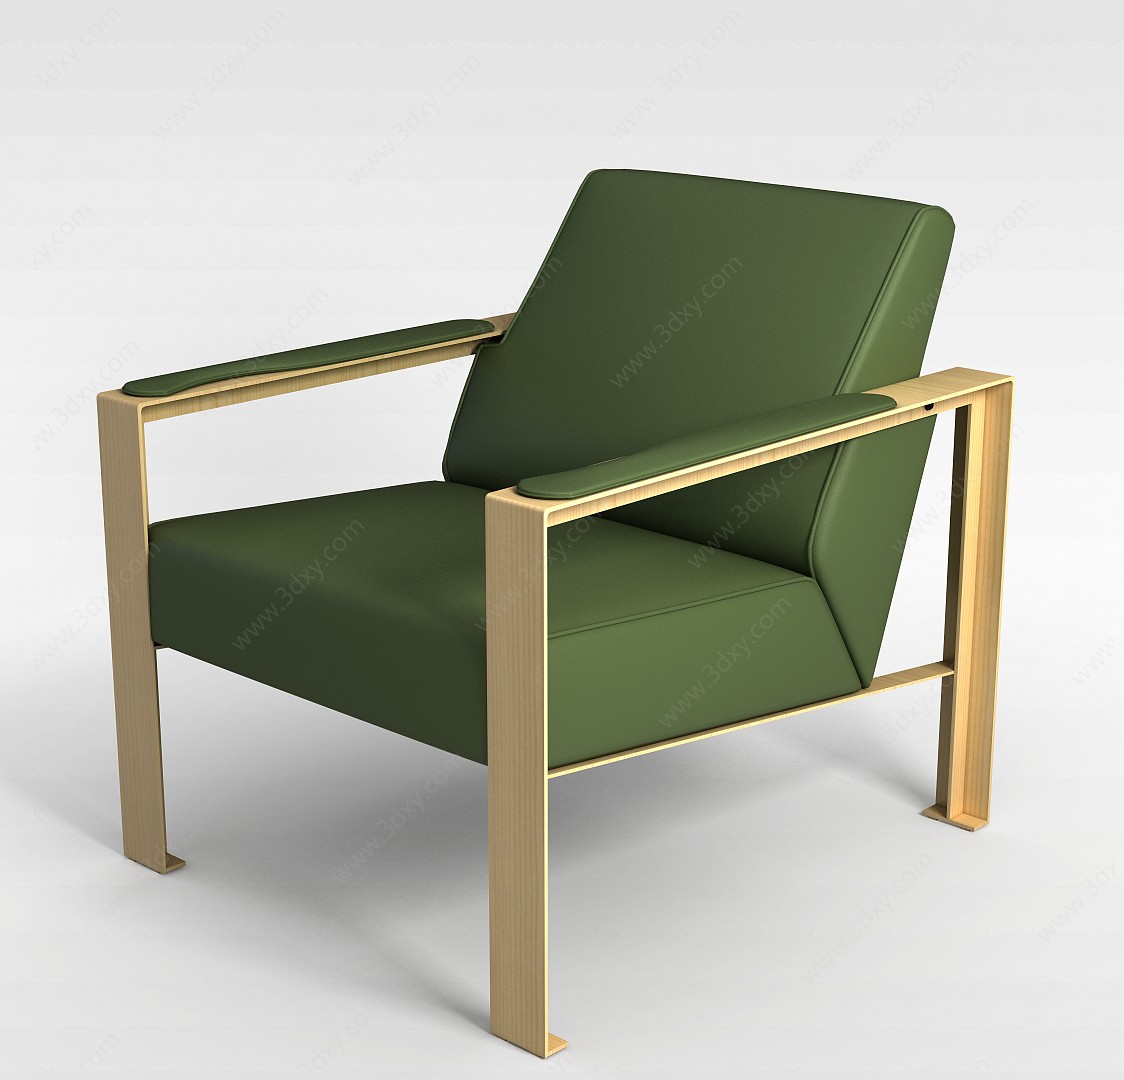 简易淡绿色沙发椅3D模型